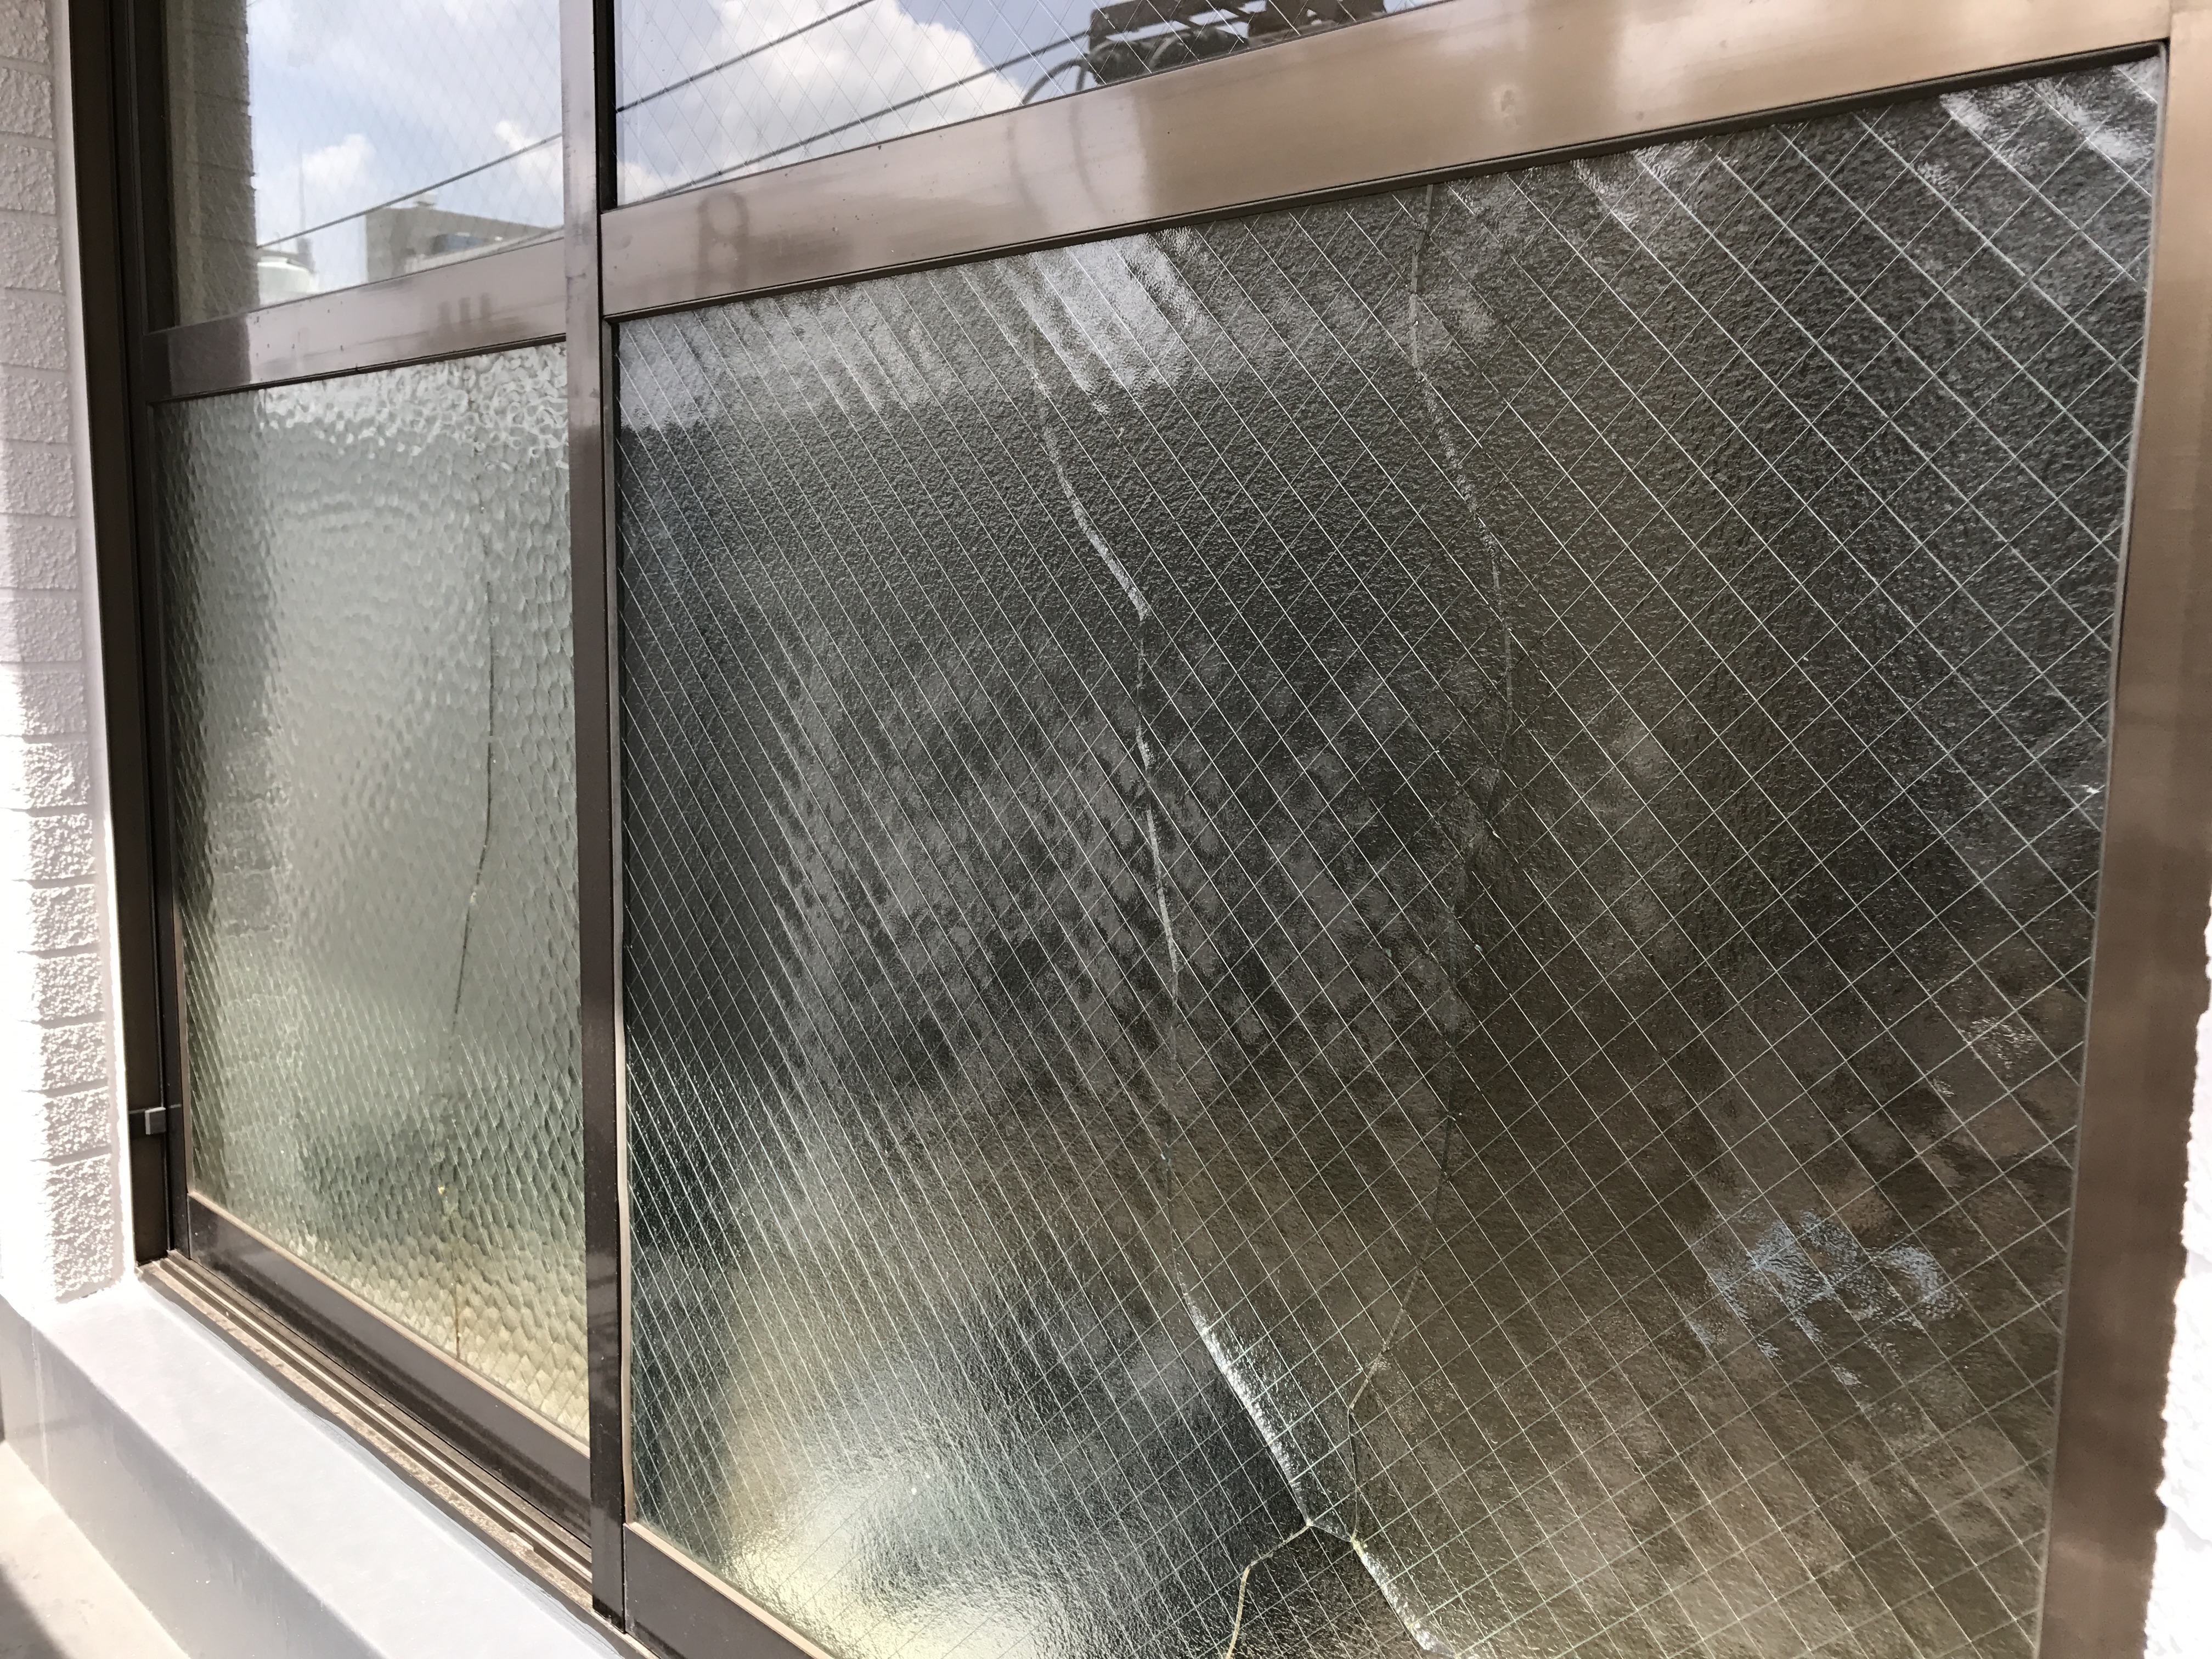 マンションの窓ガラス交換 熱割れ 名古屋のガラス交換 修理 取り付け グラスプラン 大脇硝子店